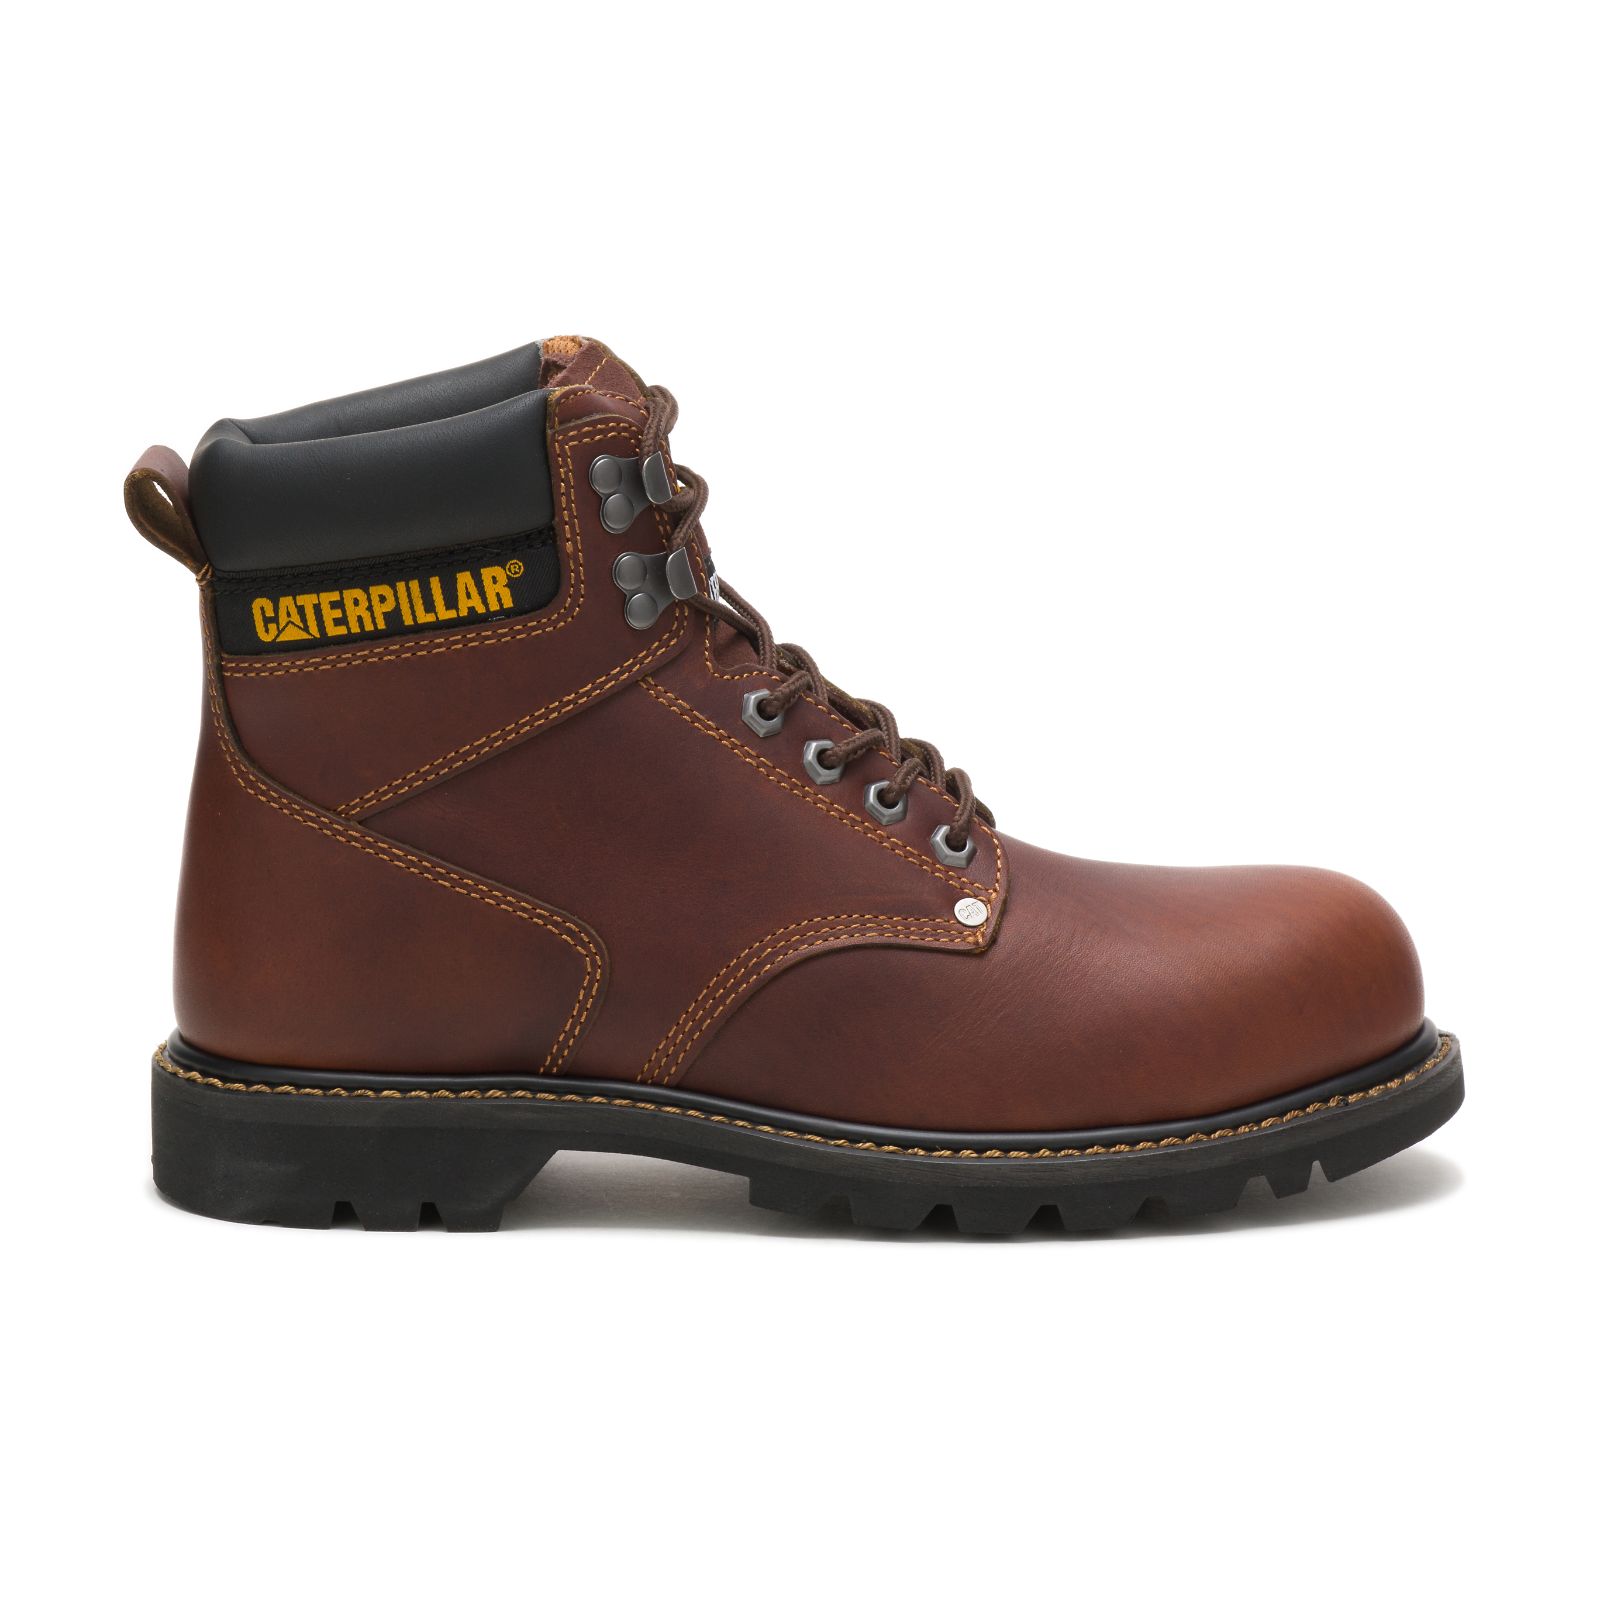 Men's Caterpillar Second Shift Steel Toe Steel Toe Boots Brown | Cat-428137